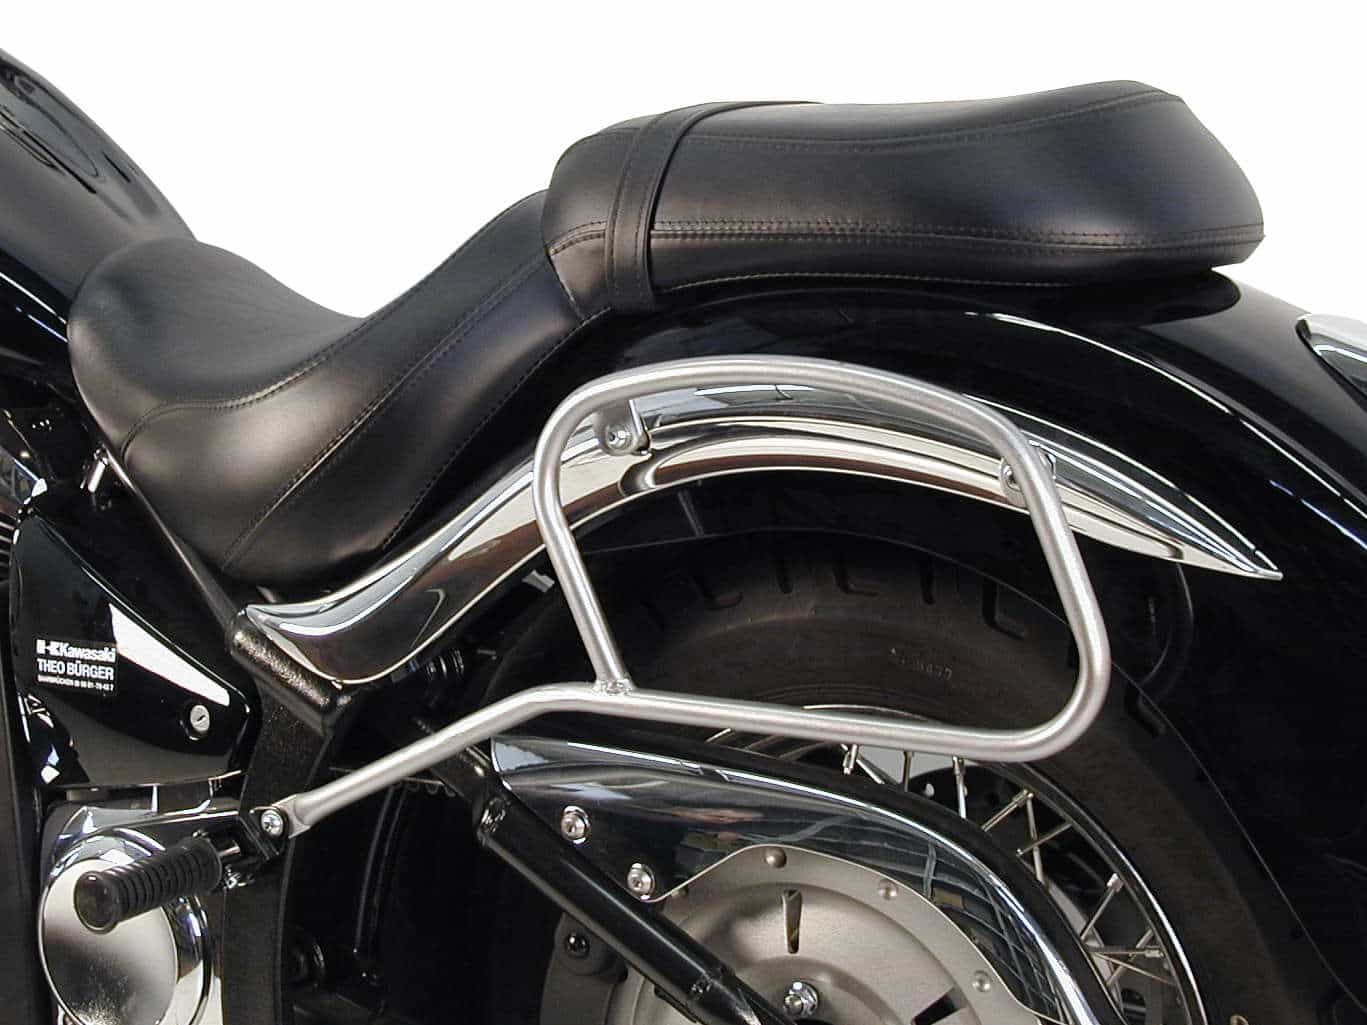 Leather bag holder tube-type - chrome for Kawasaki VN 900 Classic / 900 Custom / Vulcan